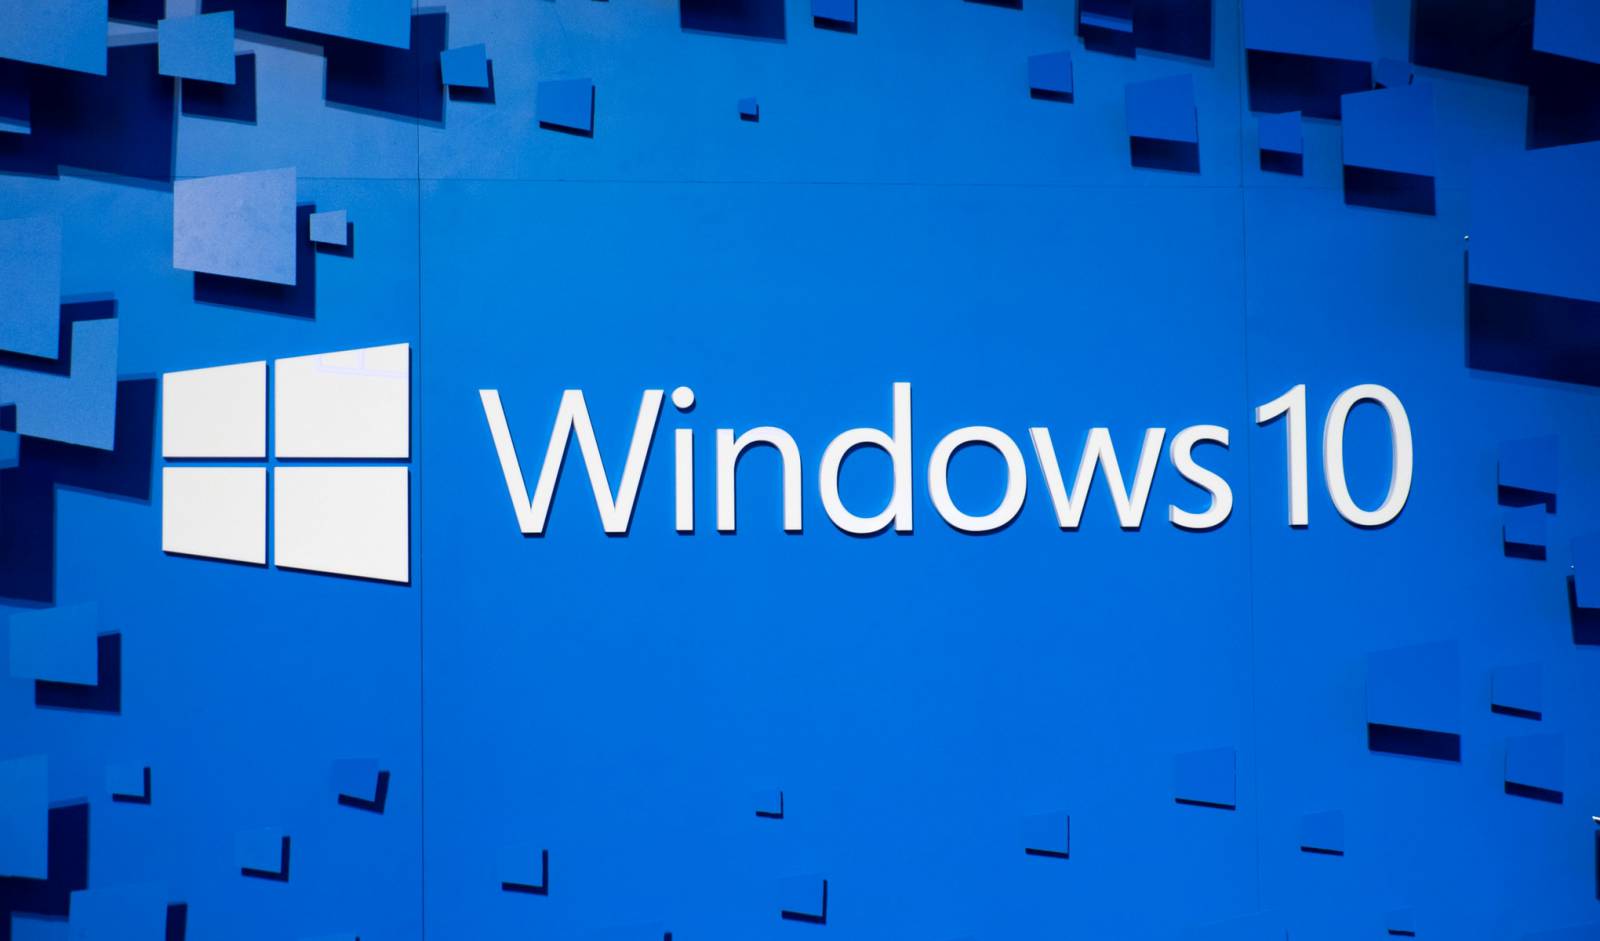 ÖVERRASKA i Windows 10 med en förändring som förvånade användarna